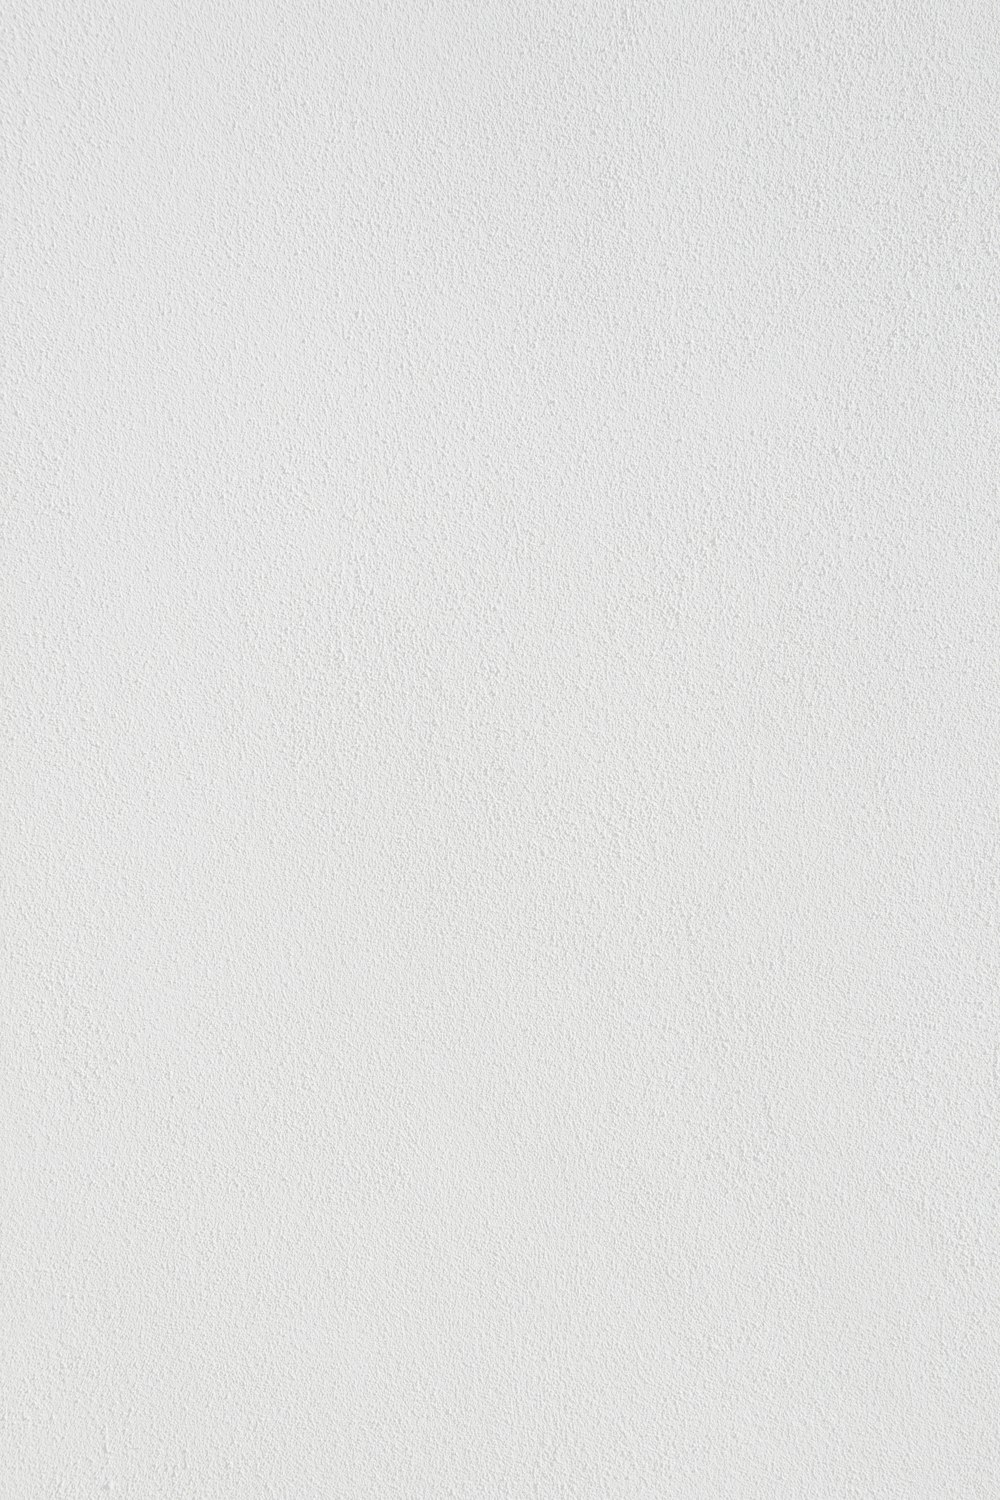 검은 선이 있는 흰색 벽 페인트